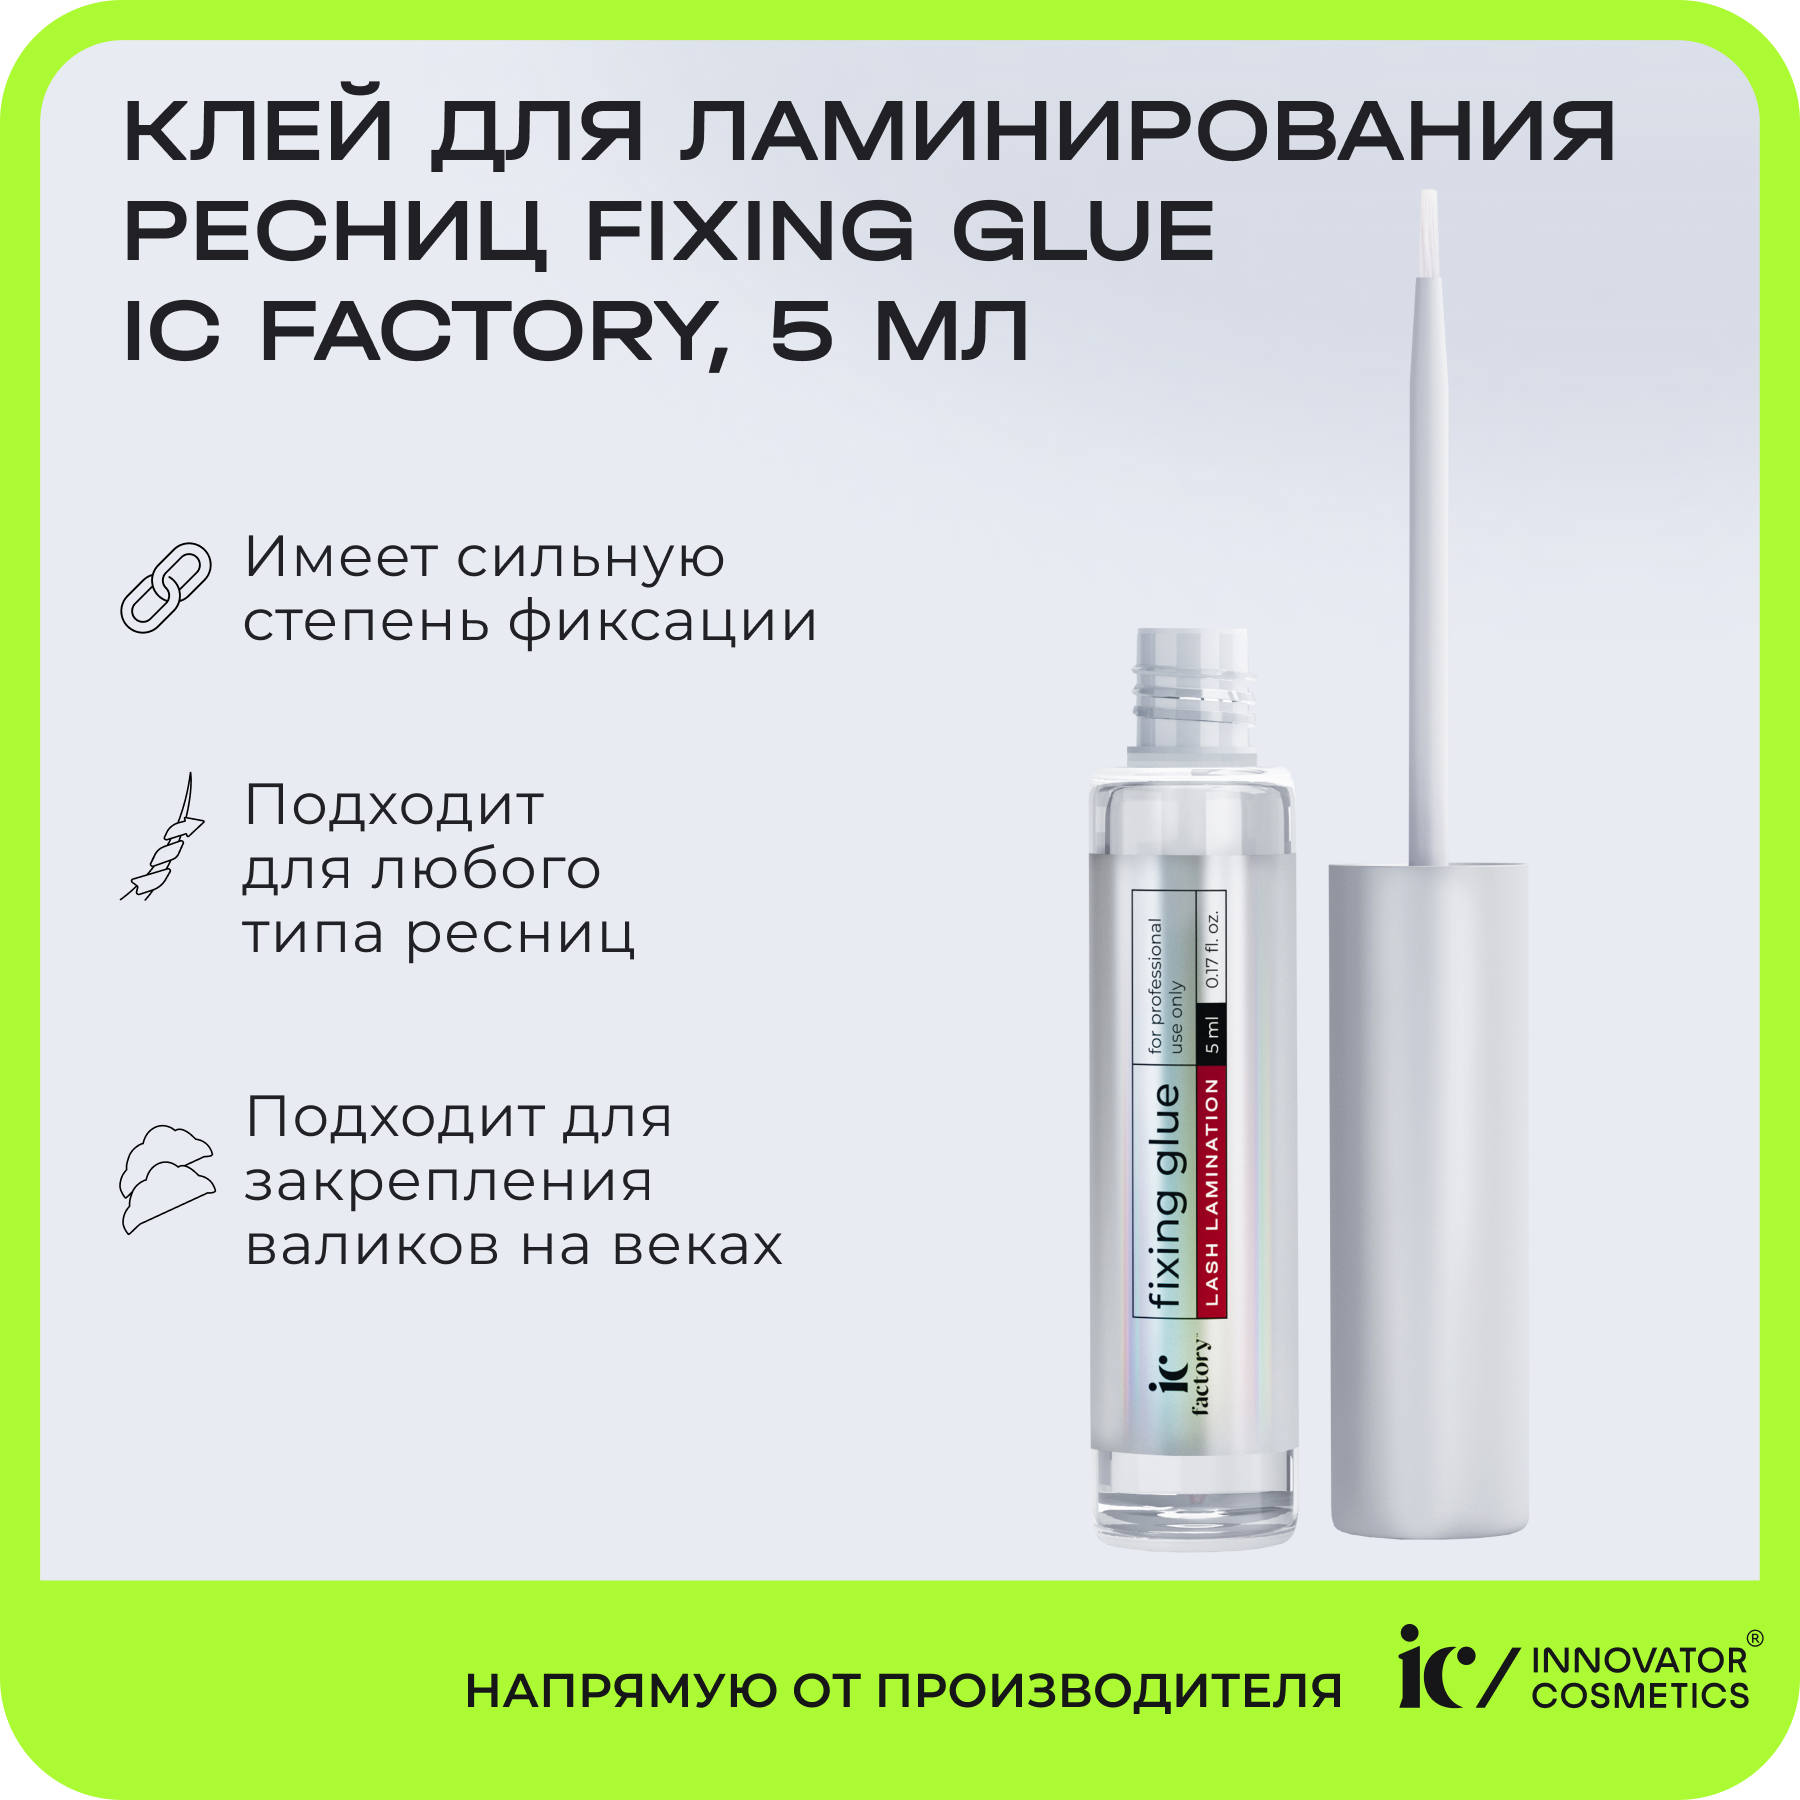 Клей для ламинирования ресниц Innovator Cosmetics Fixing Glue Ic Factory 5 мл